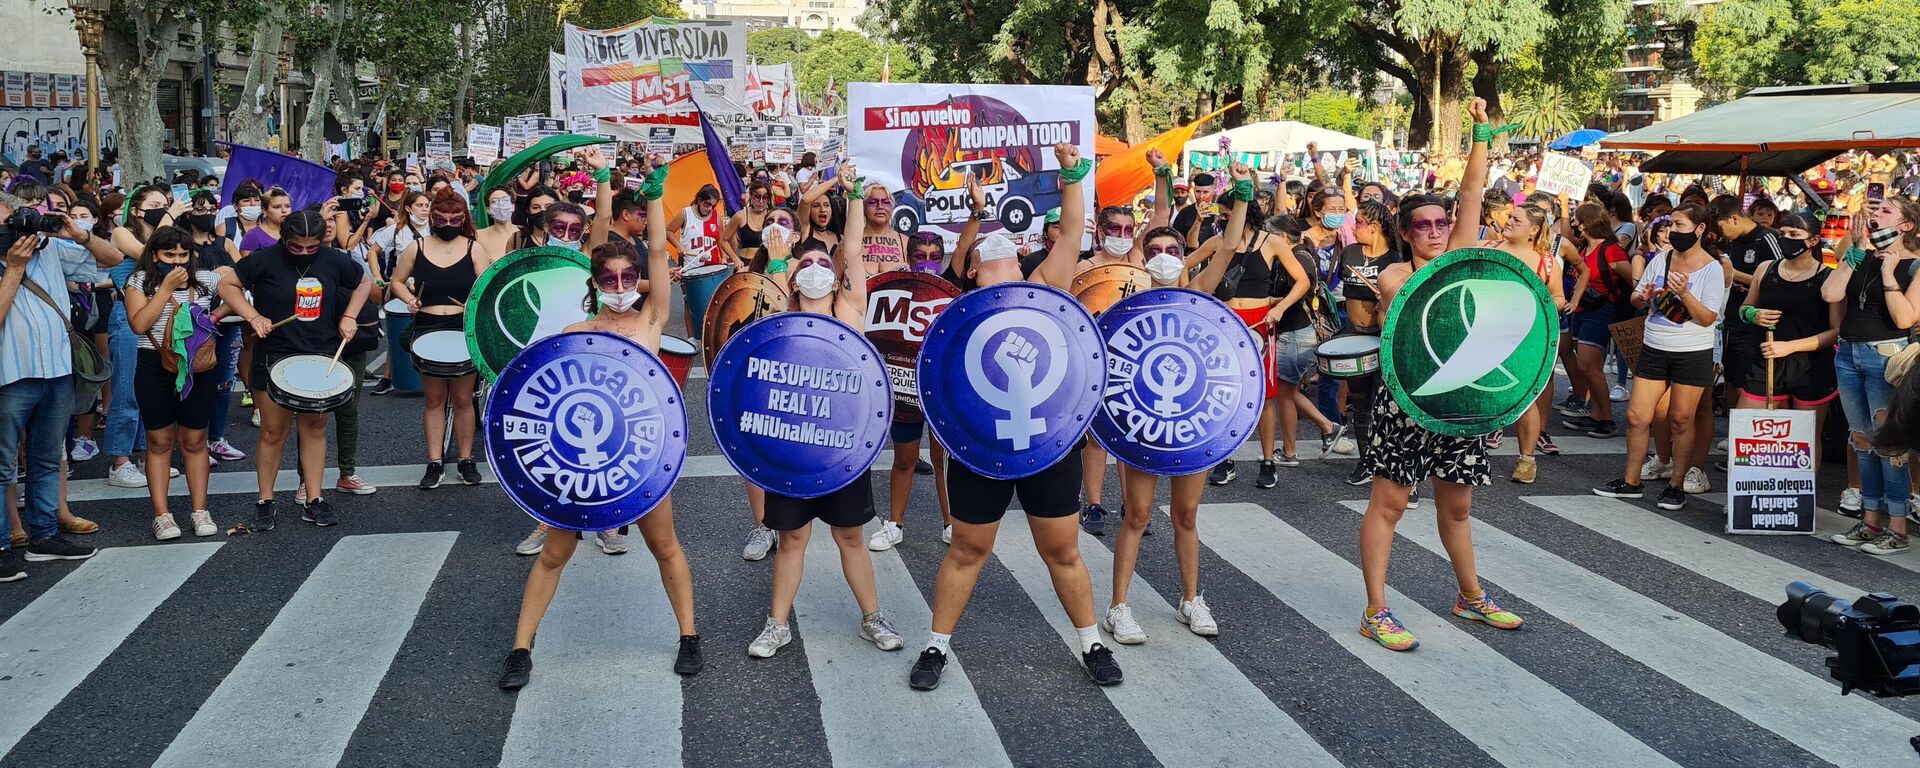 El Día Internacional de la Mujer fue otra jornada de lucha del feminismo fuera del Congreso argentino - Sputnik Mundo, 1920, 12.03.2021